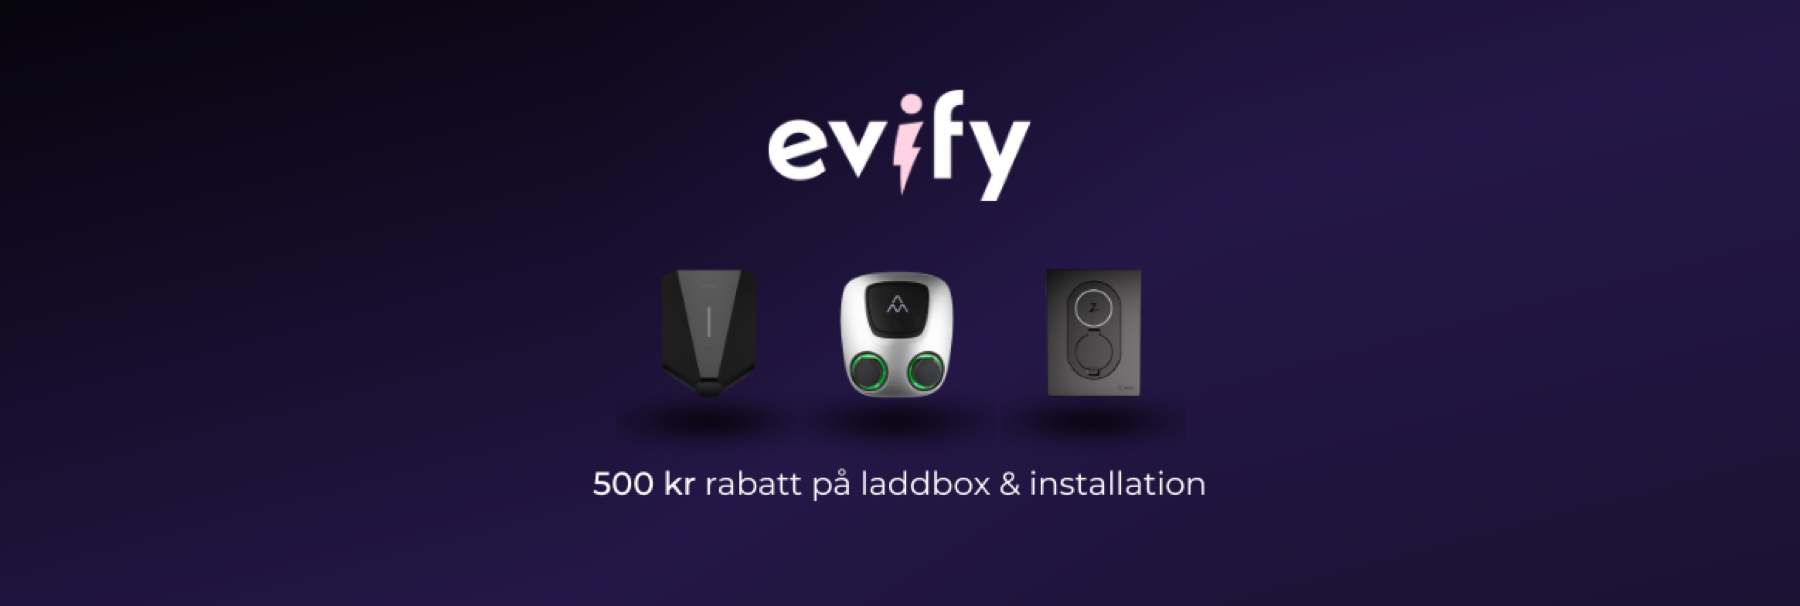 500 kr rabatt på laddbox och installation hos Evify!